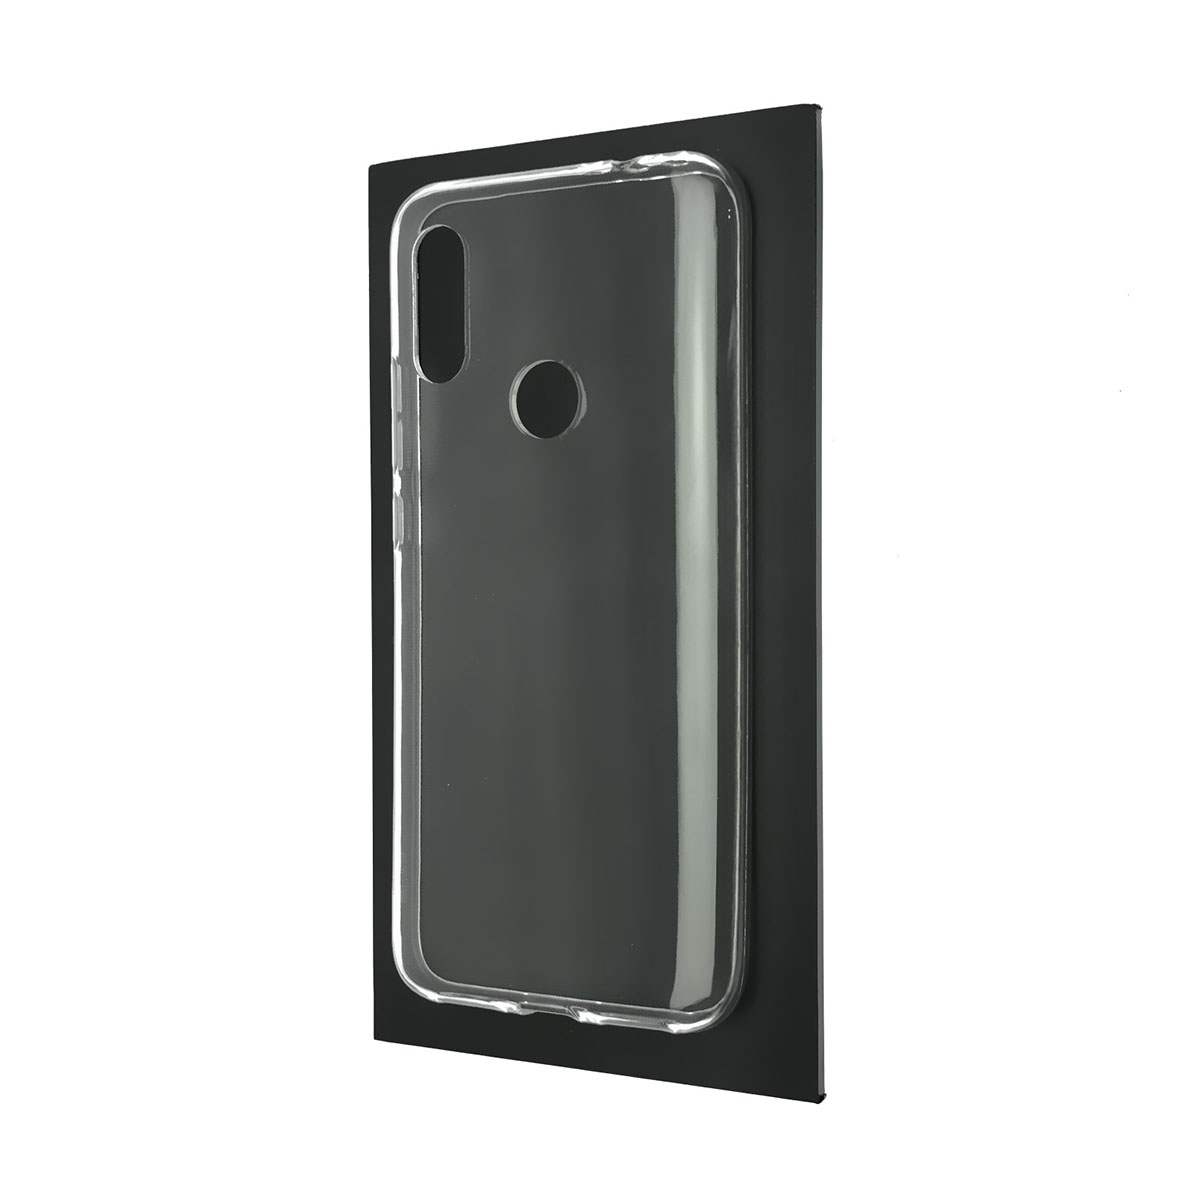 Чехол накладка TPU Case для XIAOMI Redmi 7, силикон, цвет прозрачный.